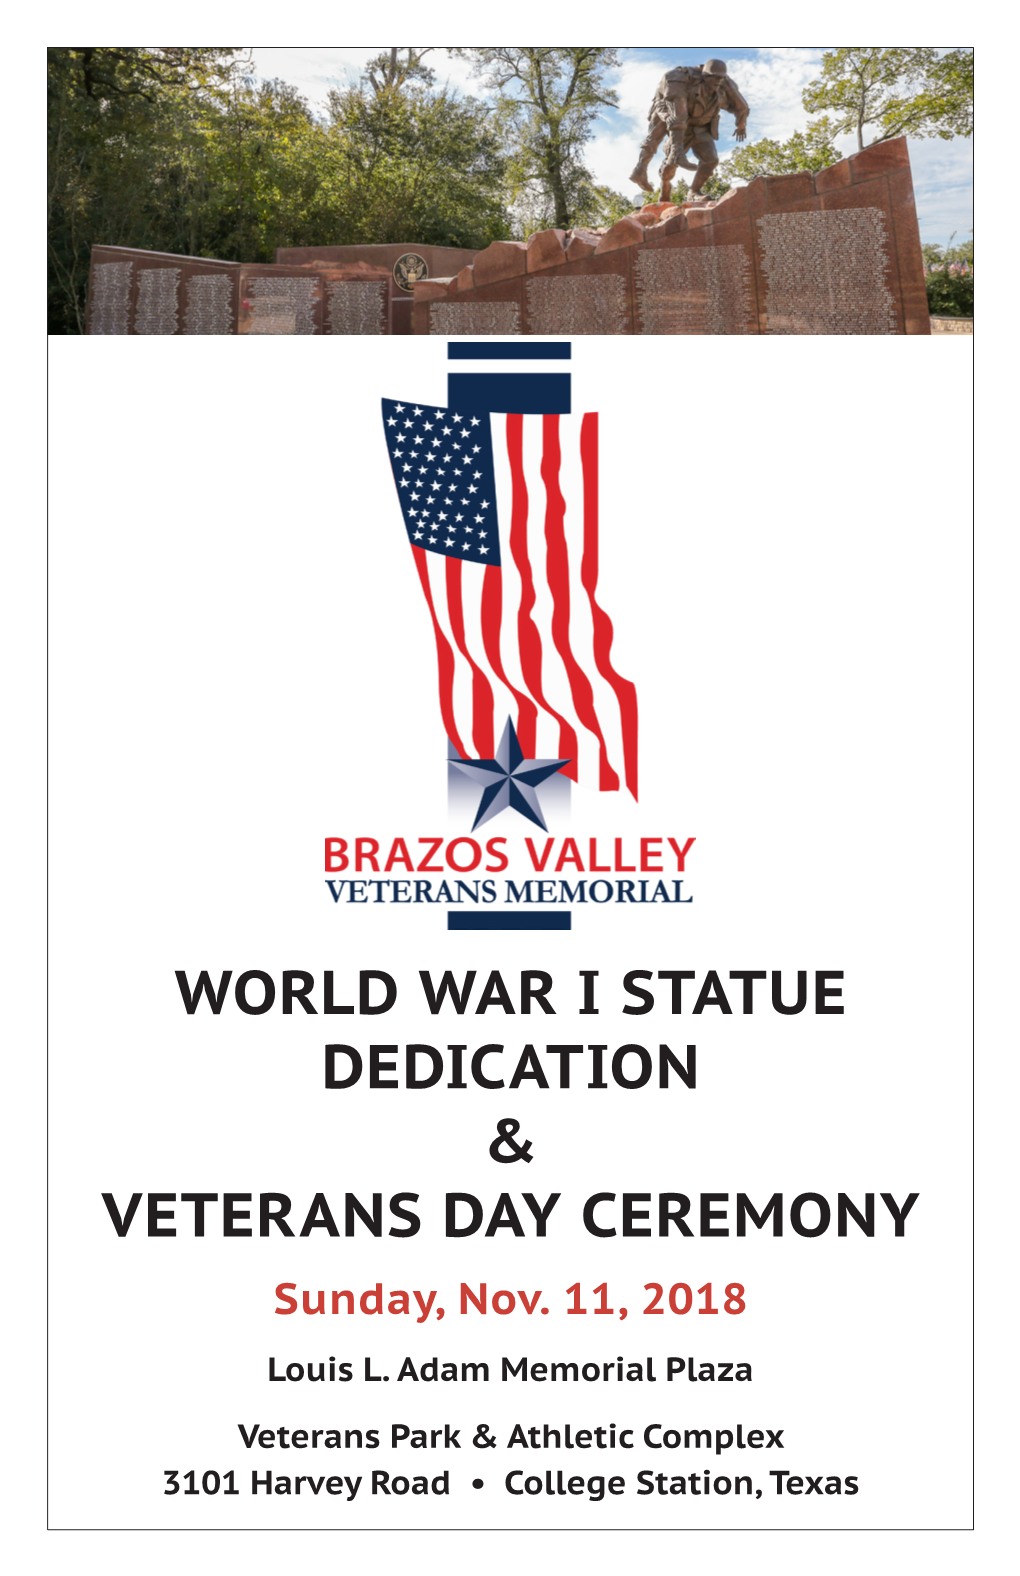 World War I Statue Dedication & Veterans Day Ceremony